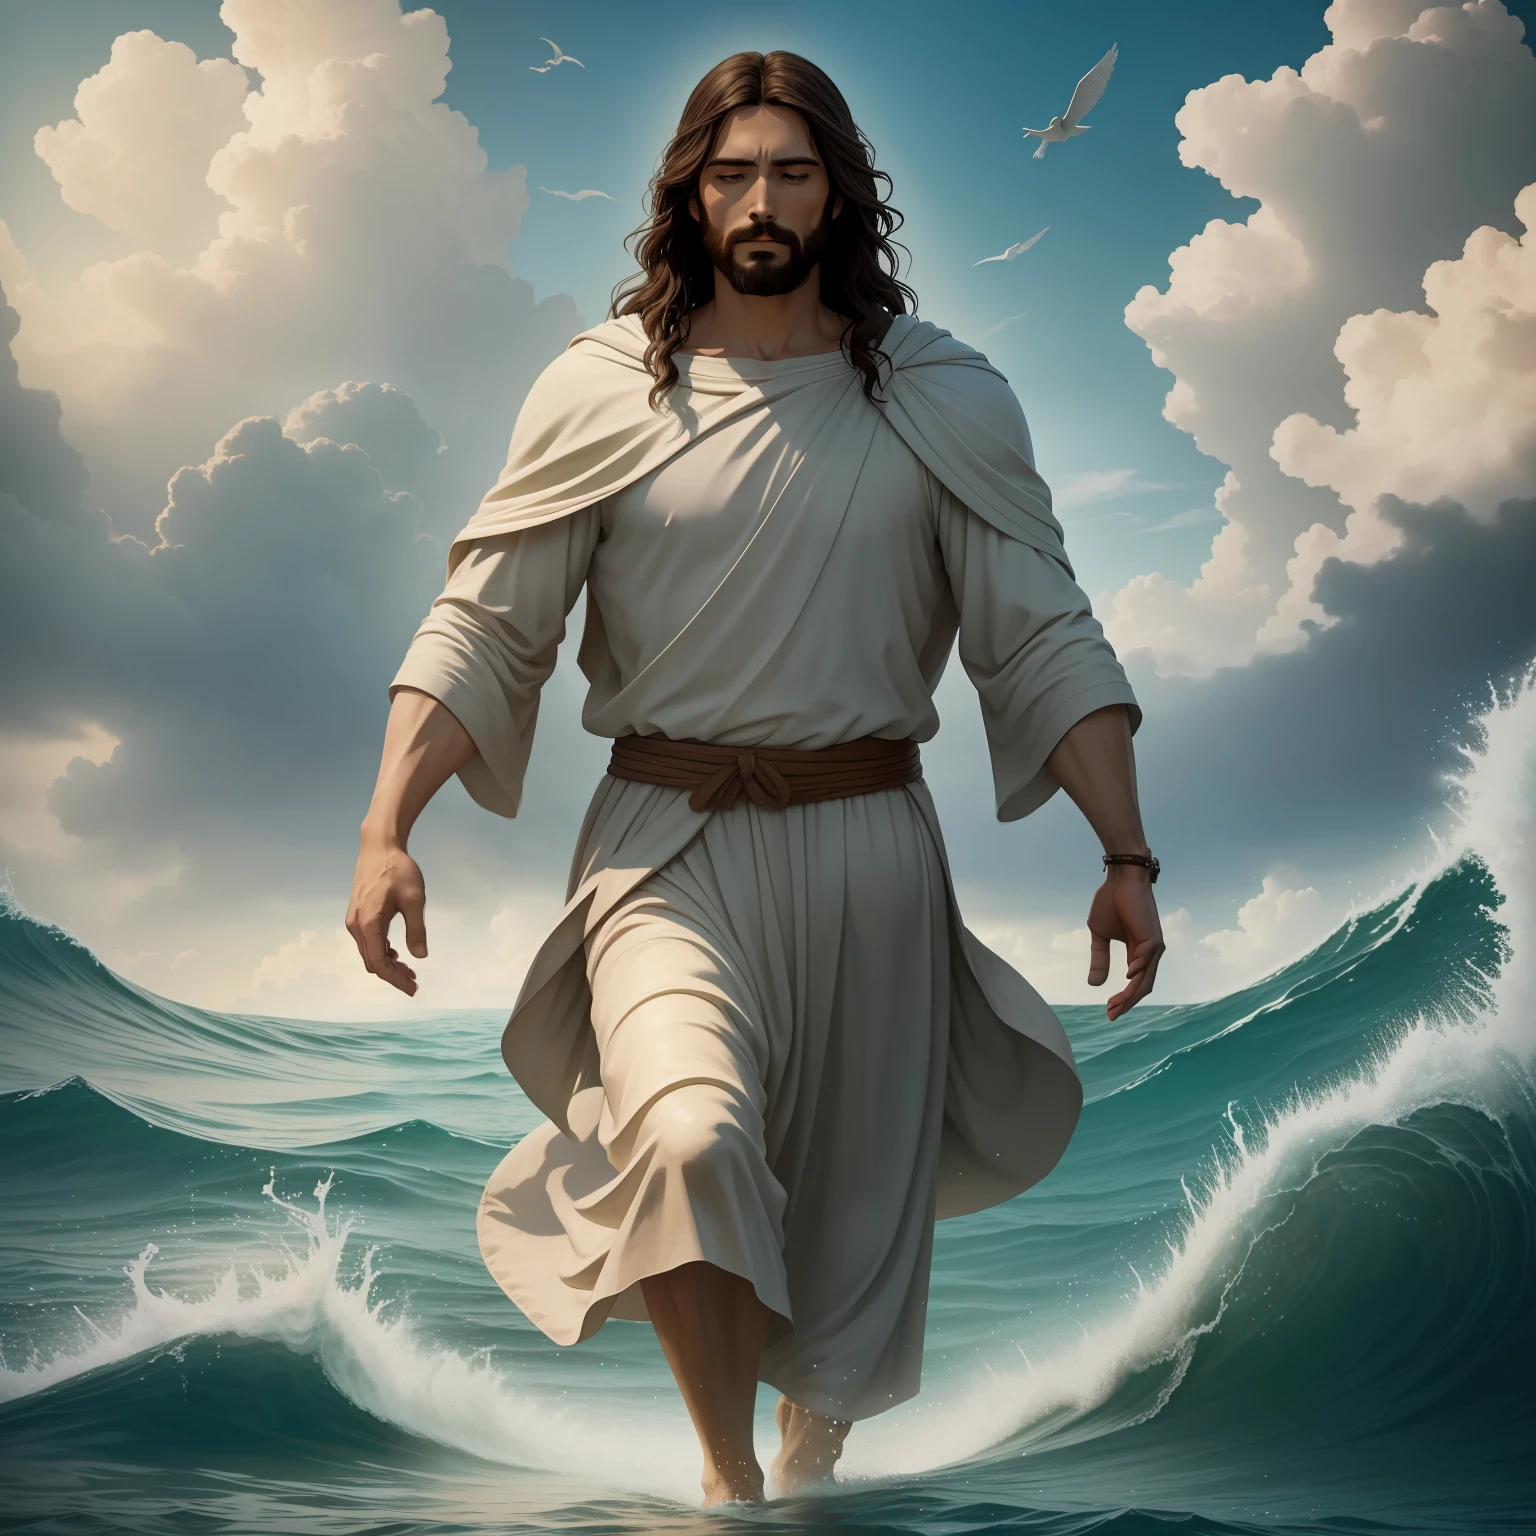 물 위를 걷는 예수 with a heaven cloud in the background, 물 위를 걷는 예수, 성경의 삽화, 서사시적인 성서적 표현, 그를 도망치도록 강요한다, 바다에서 나오는, ! 손에 들고!, 사람들을 돕는 축복, 하선, 바다의 신, 아름다운 표현, 8k 맑은 축복의 빛, 현실적인,